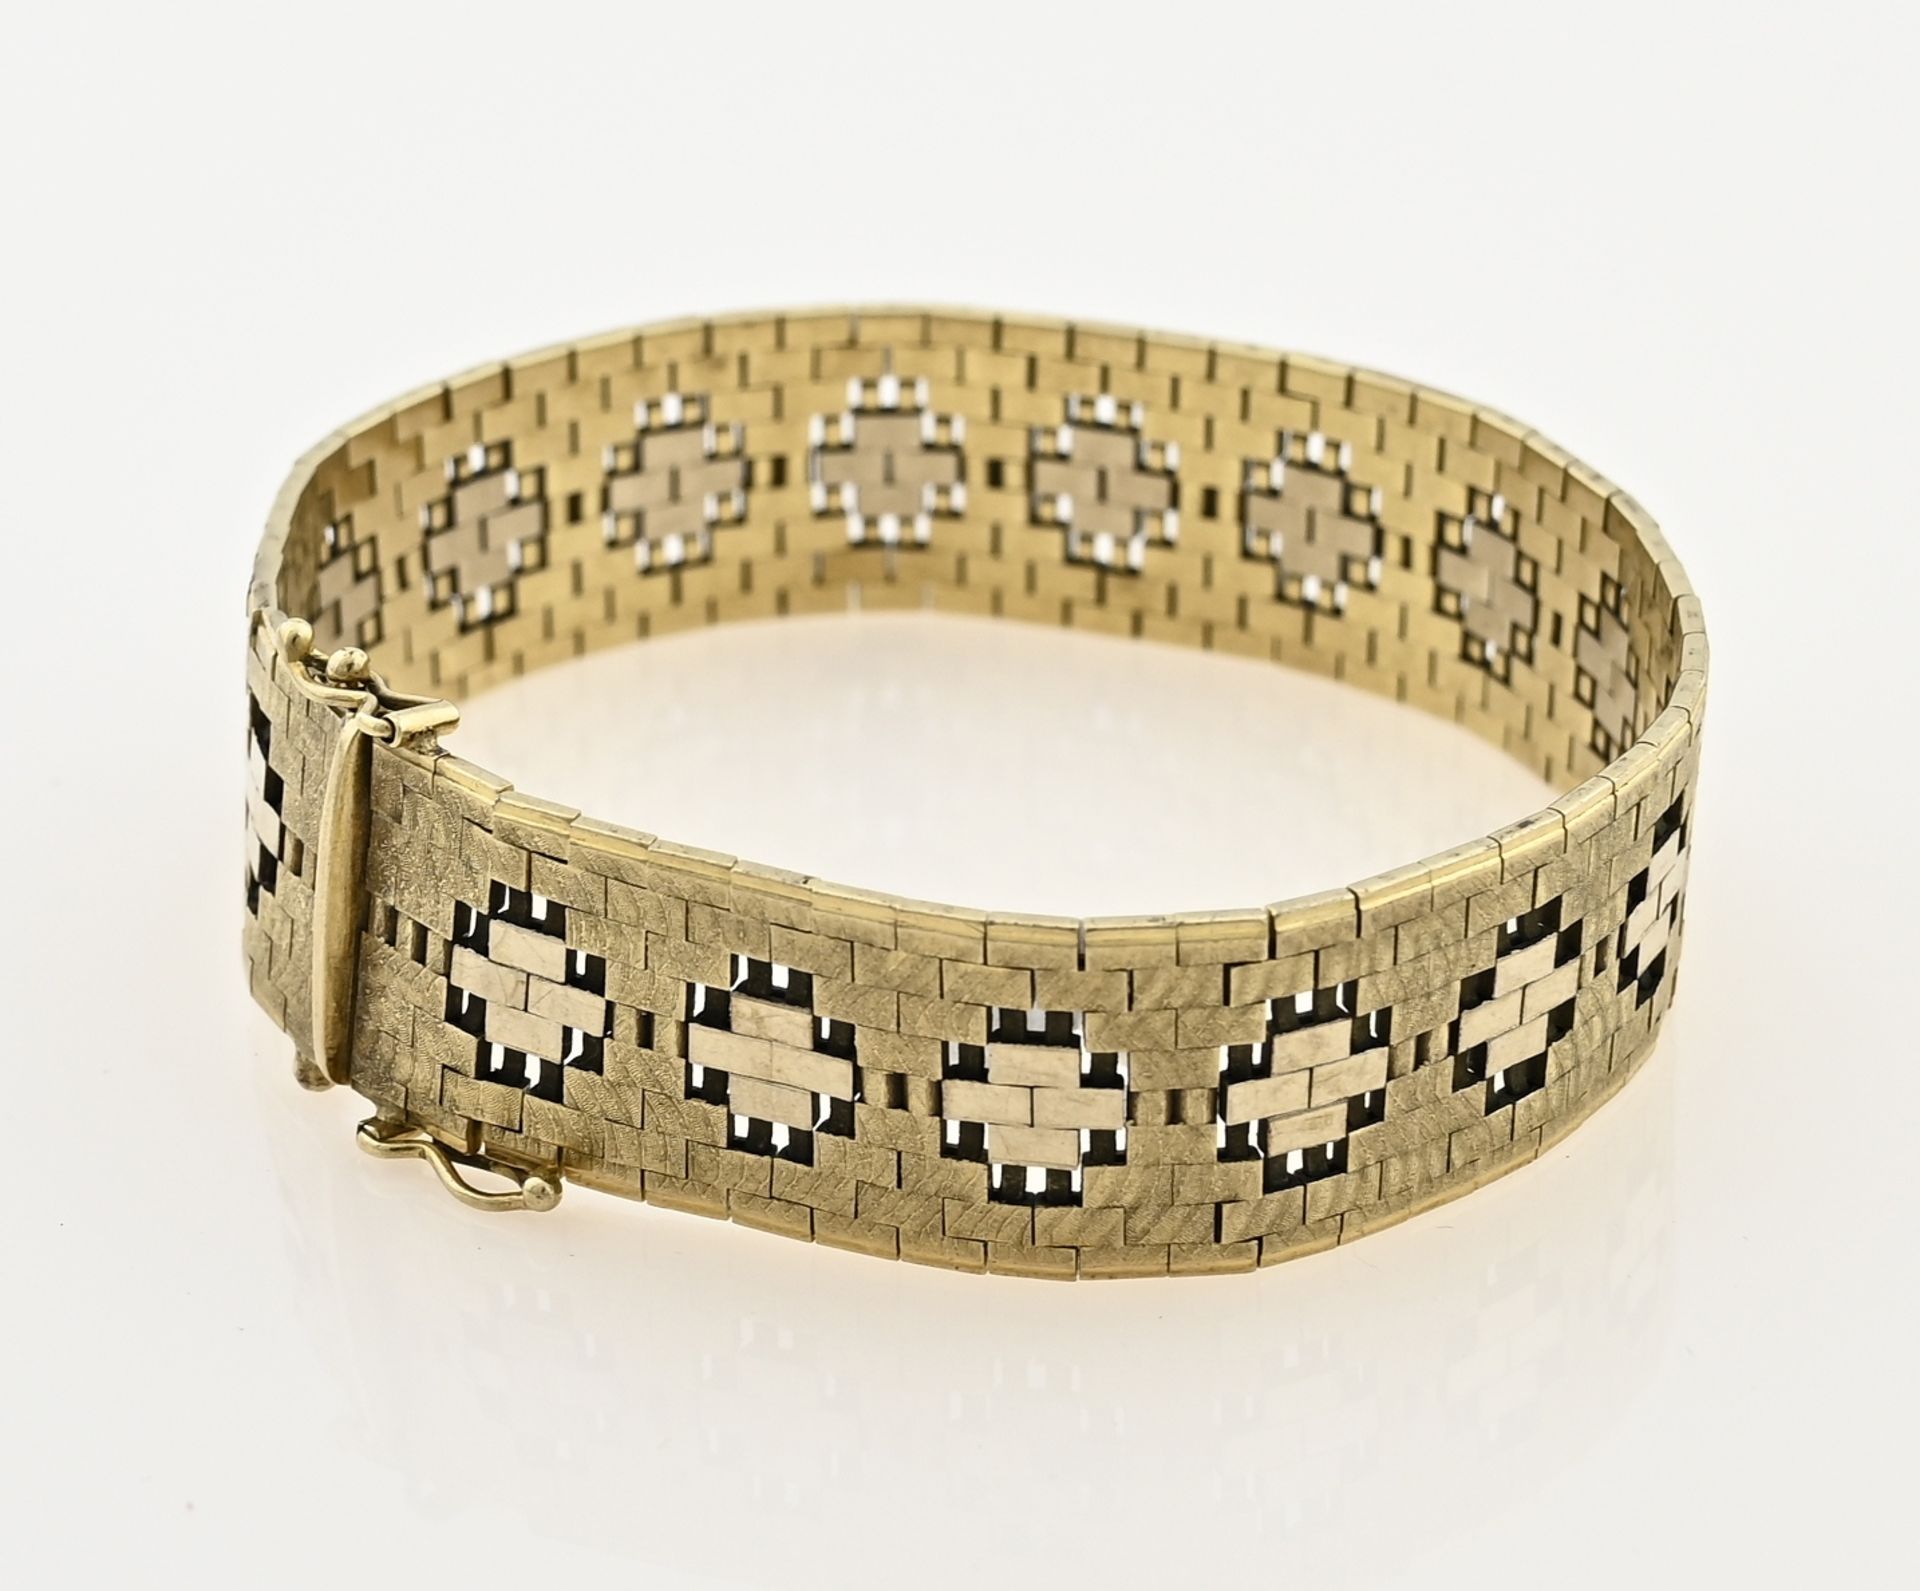 Wide gold bracelet